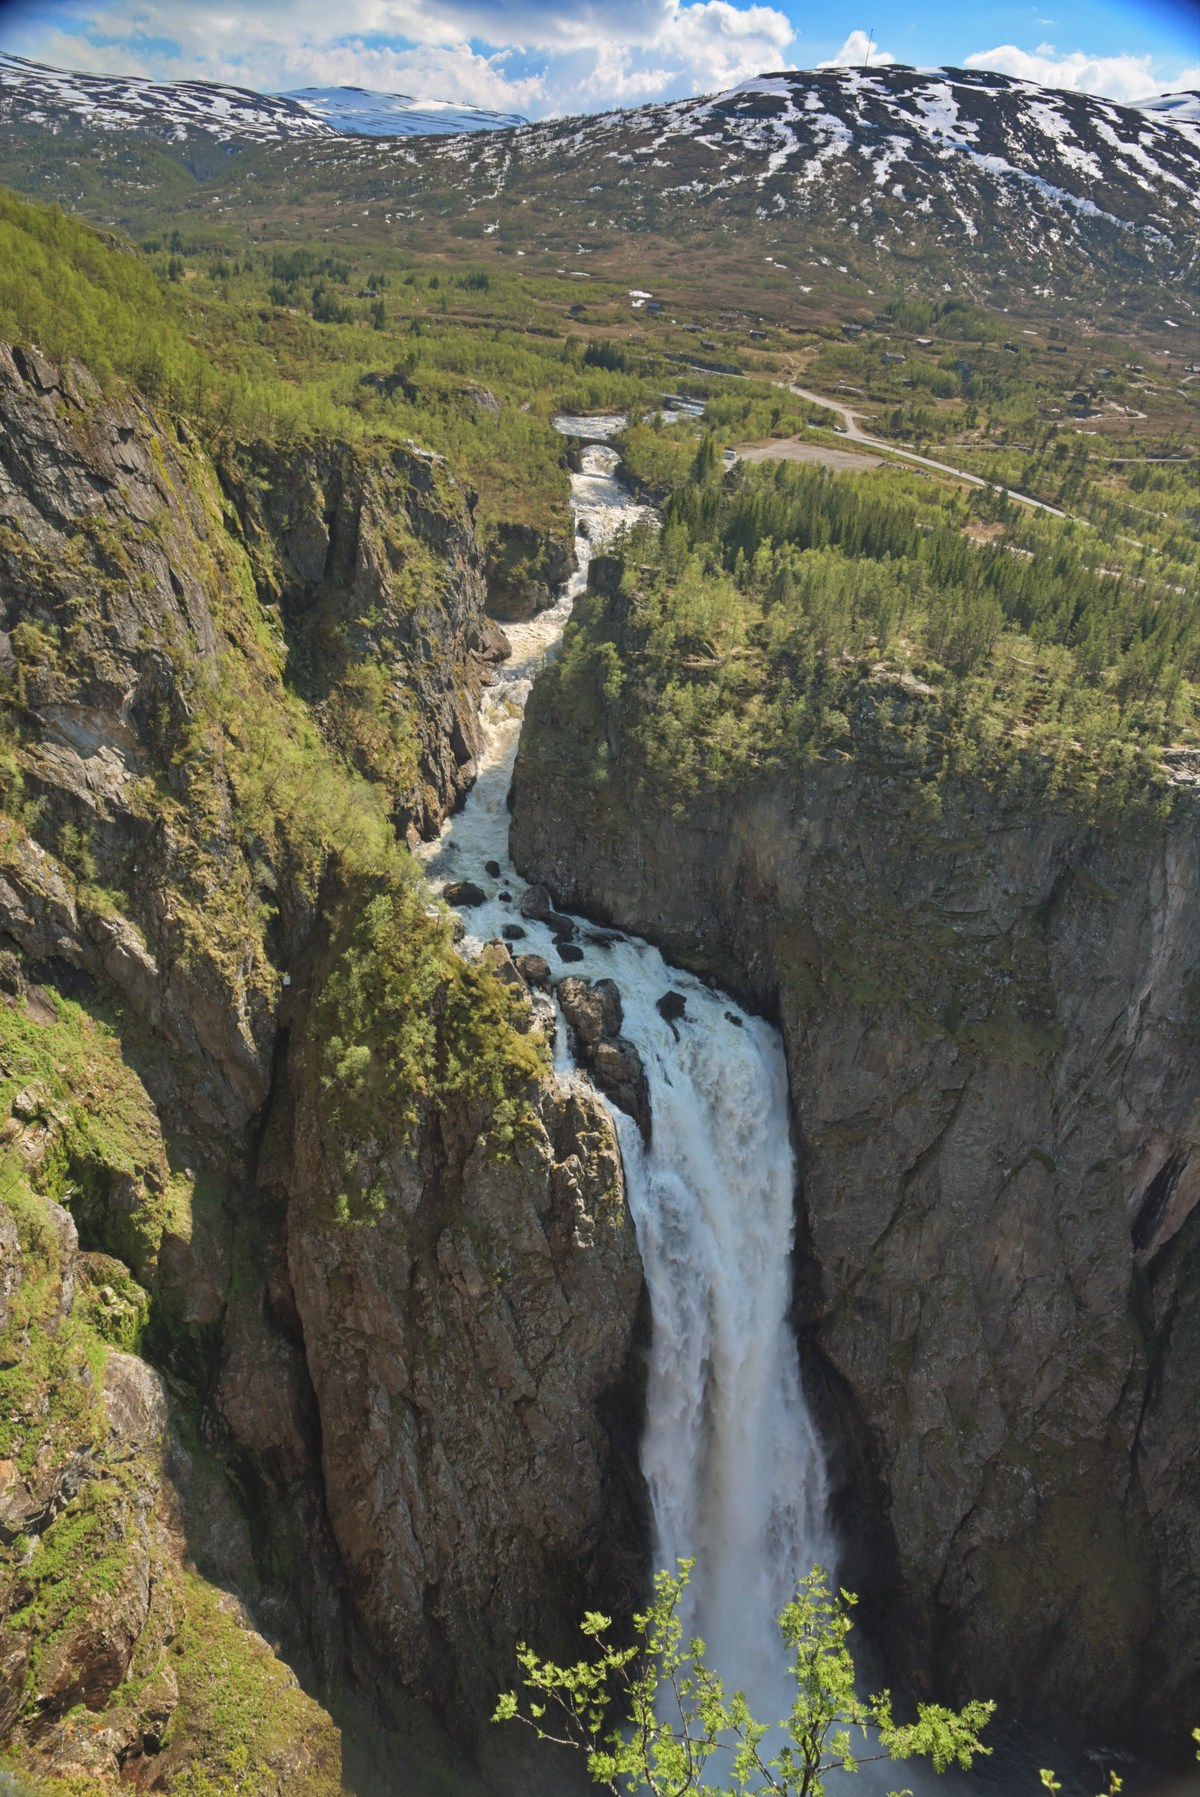  Водопад в Норвегии Ворингфоссен.